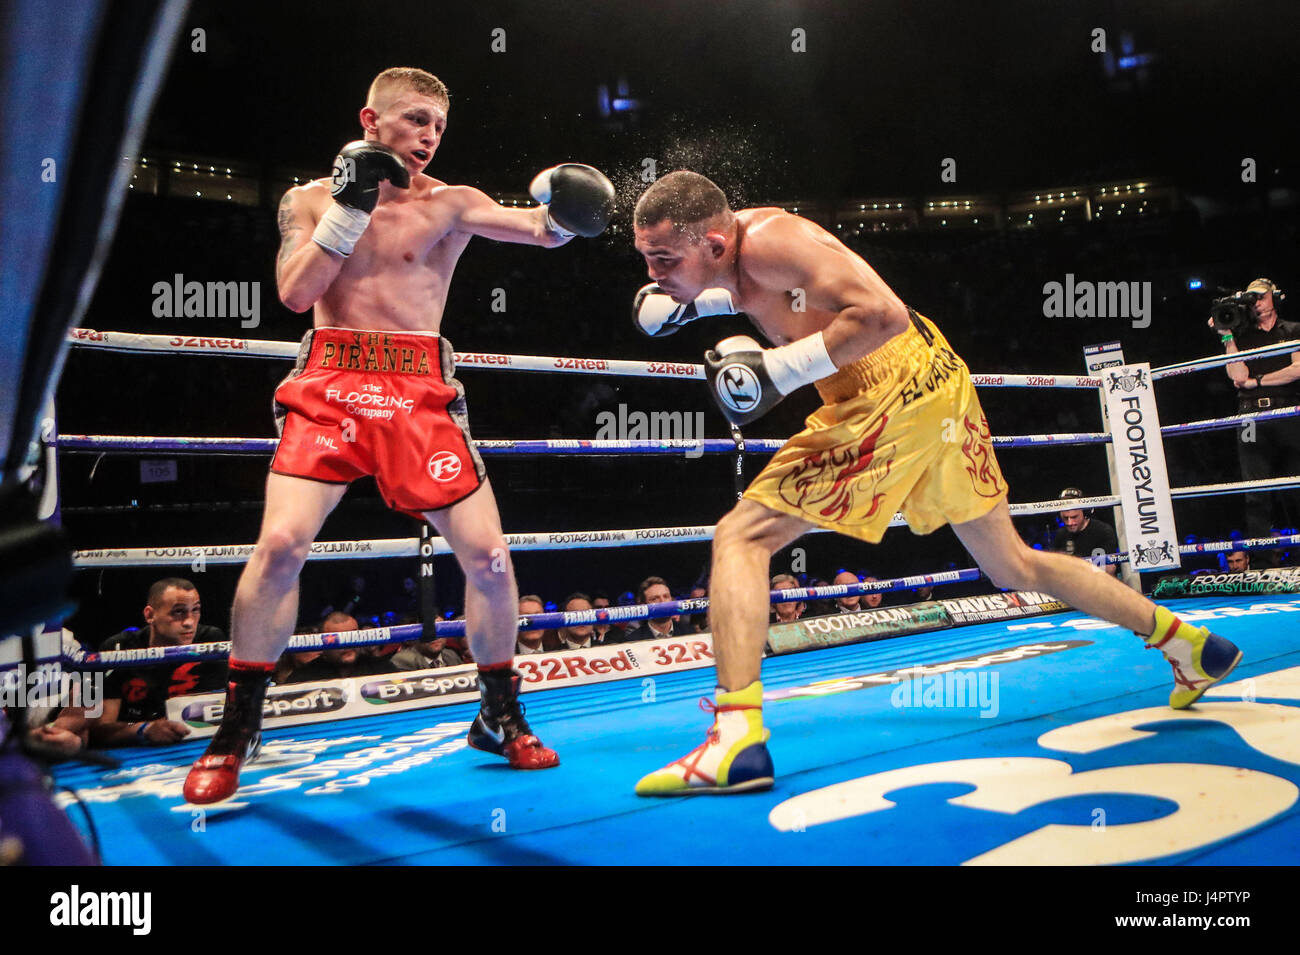 Ryan Garner (sinistra) in azione contro Rafael Castillo durante il loro peso piuma bout presso la prima diretta Arena, Leeds. Foto Stock